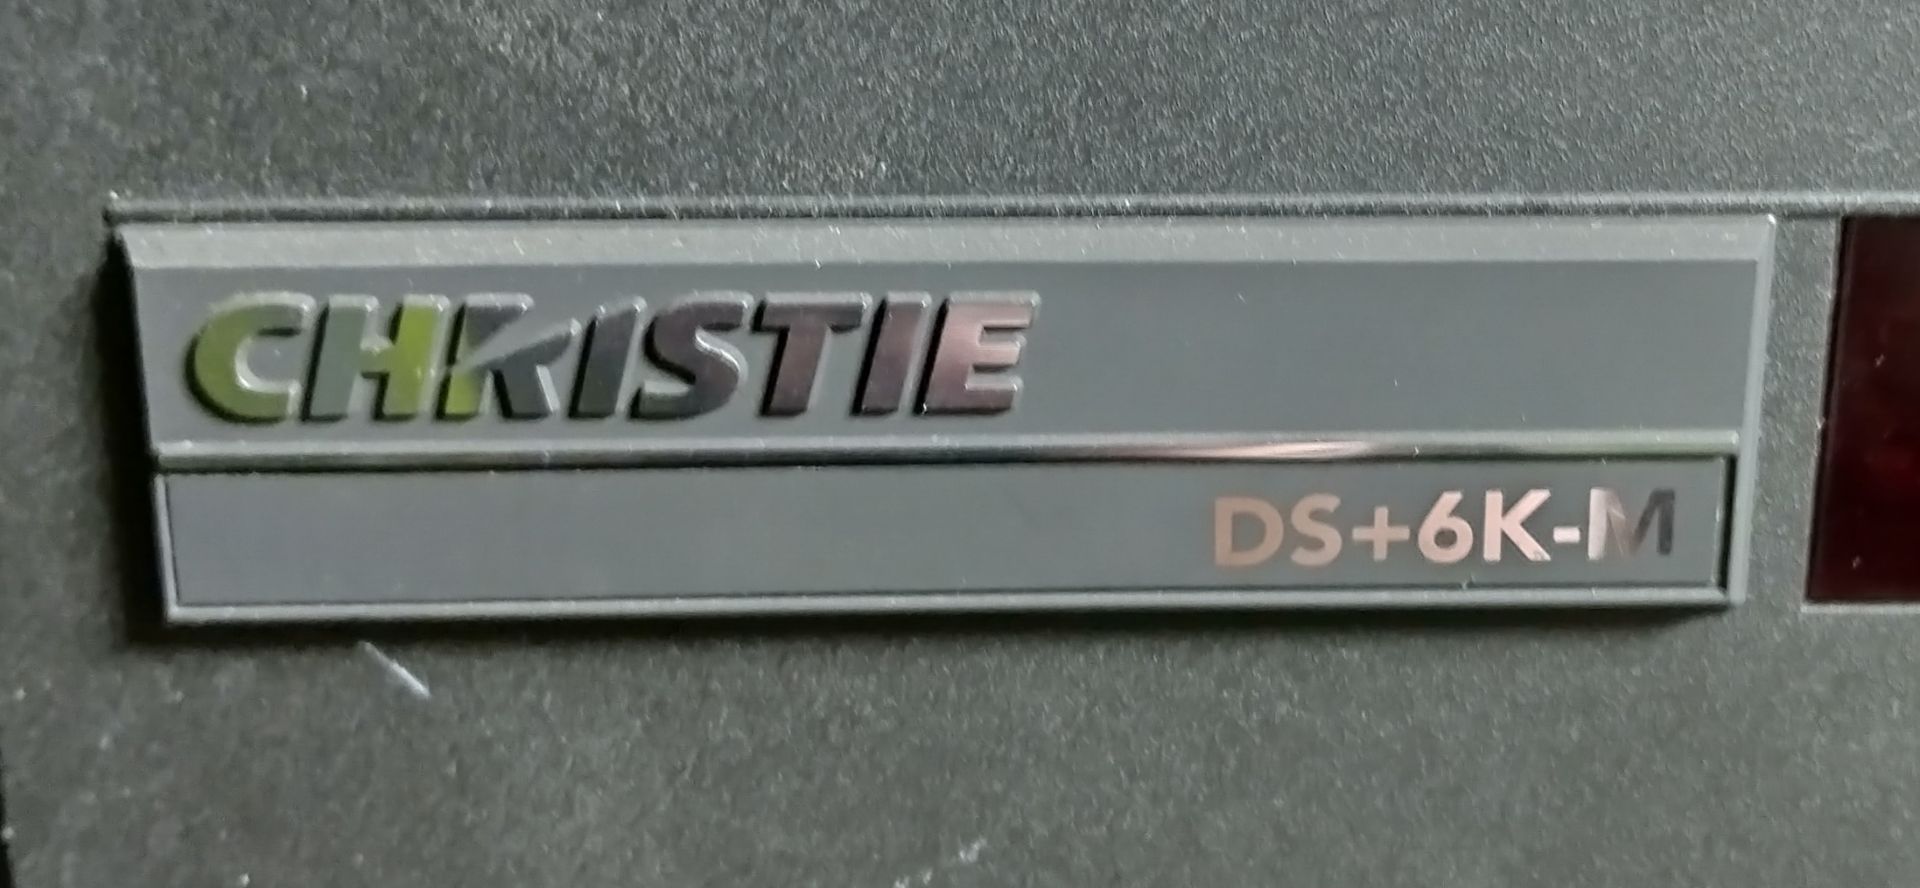 Christie DS+6K-M SXGA+ large venue projector - 100/240V 50/60Hz - L 600 x W 500 x H 260mm - Image 3 of 6